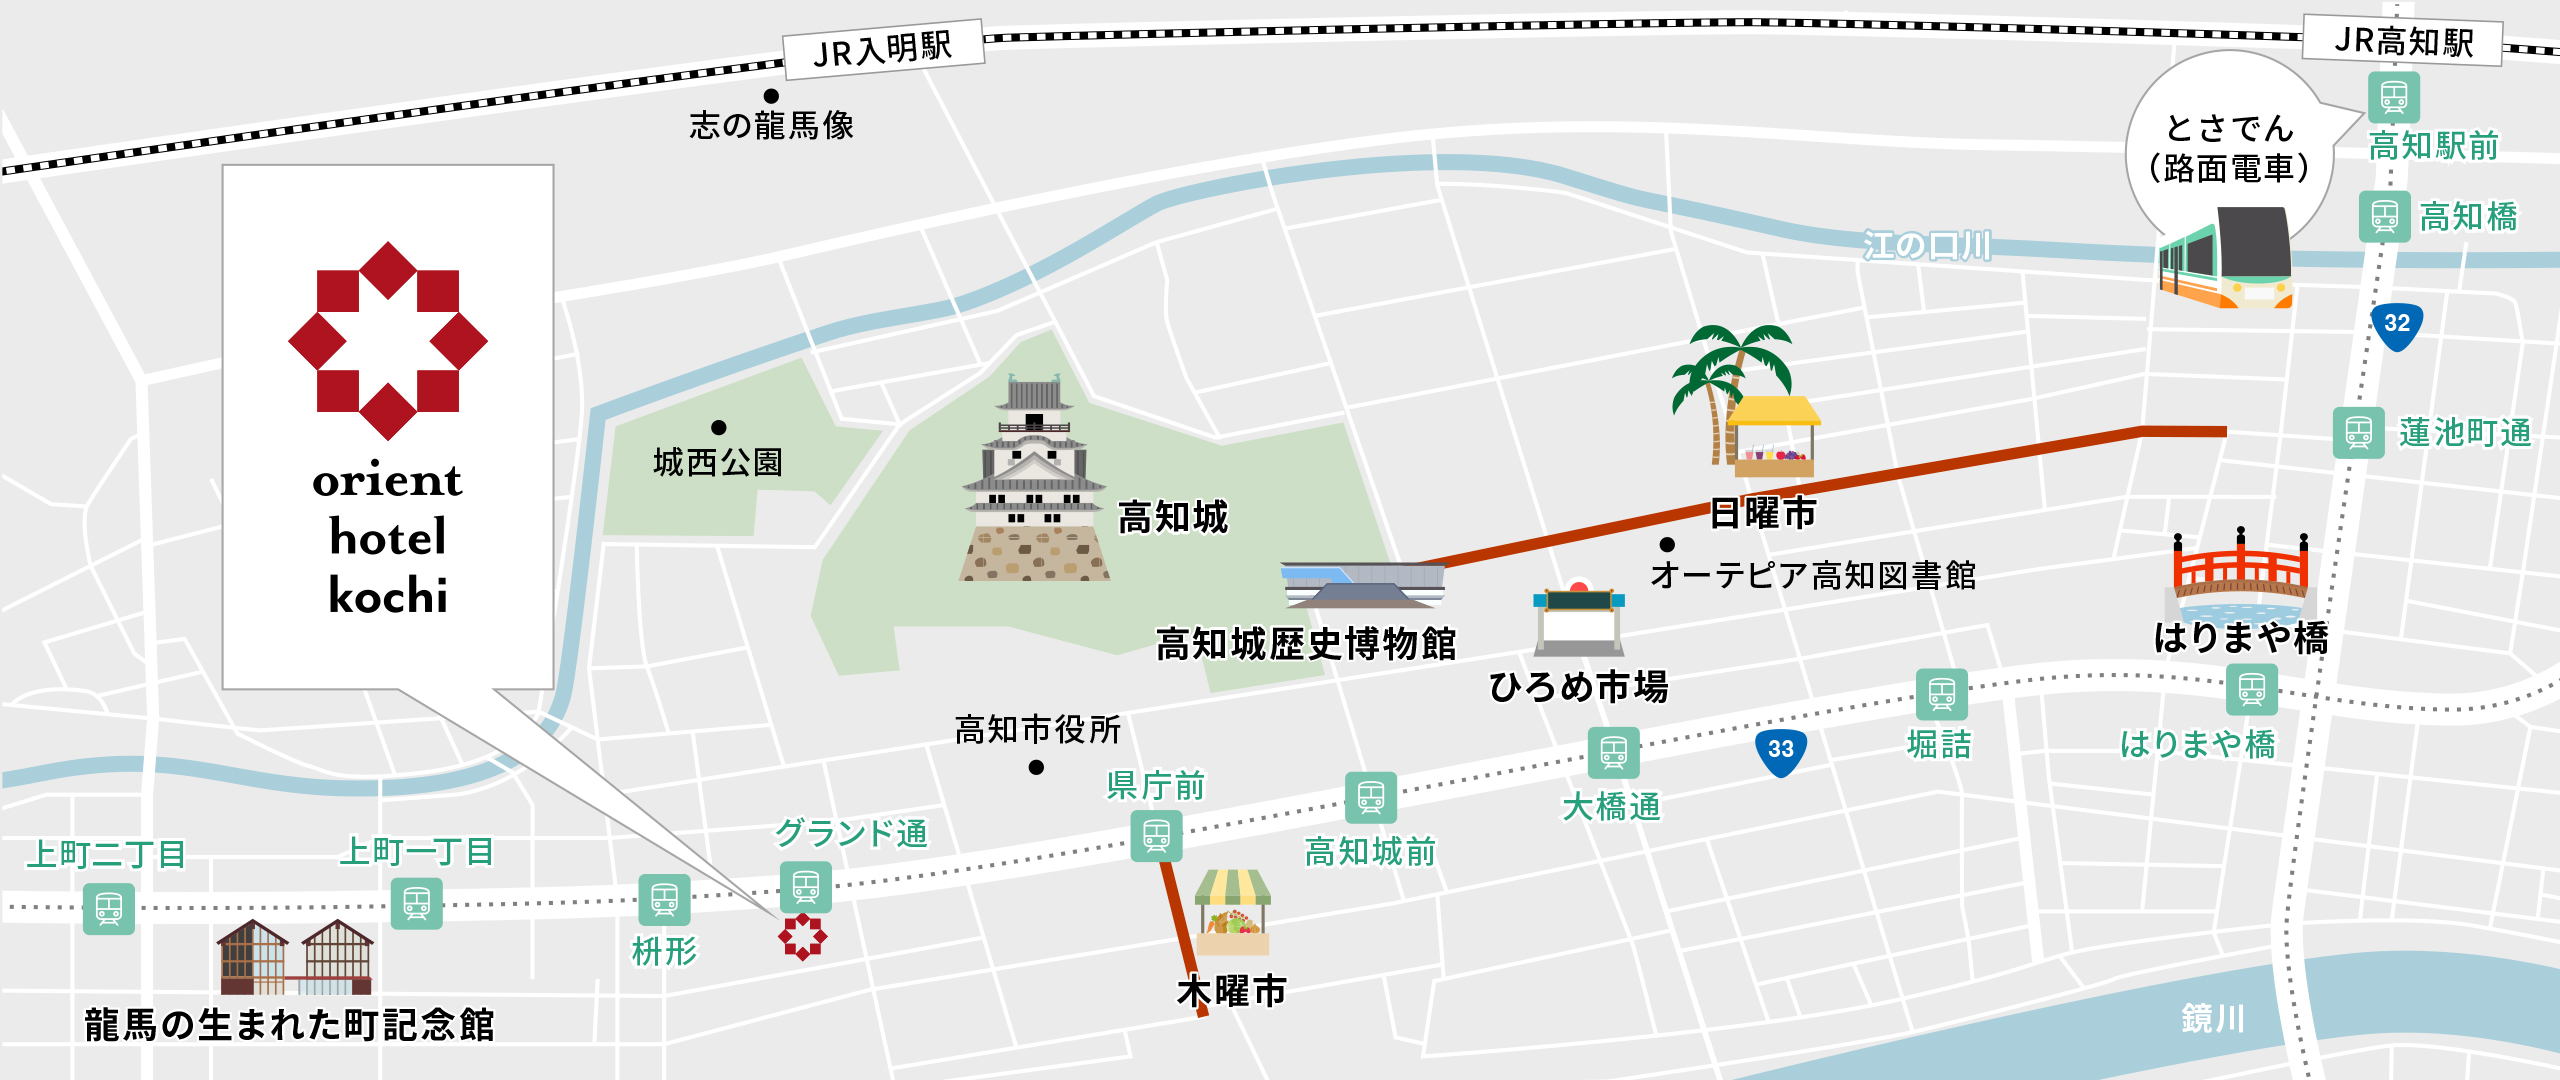 高知観光 イラストマップ